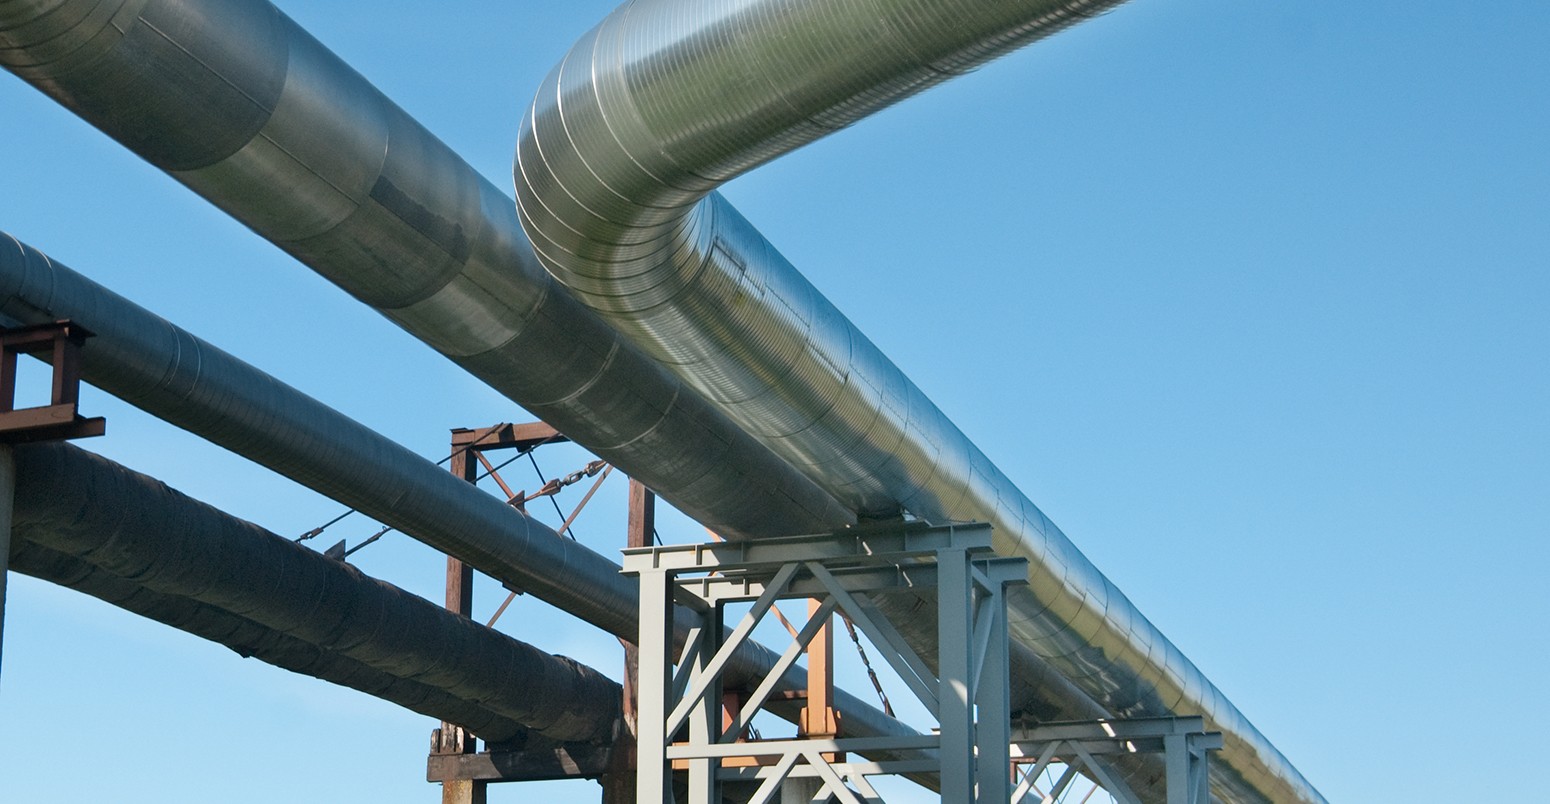 Industrial pipelines on pipe-bridge against blue sky.